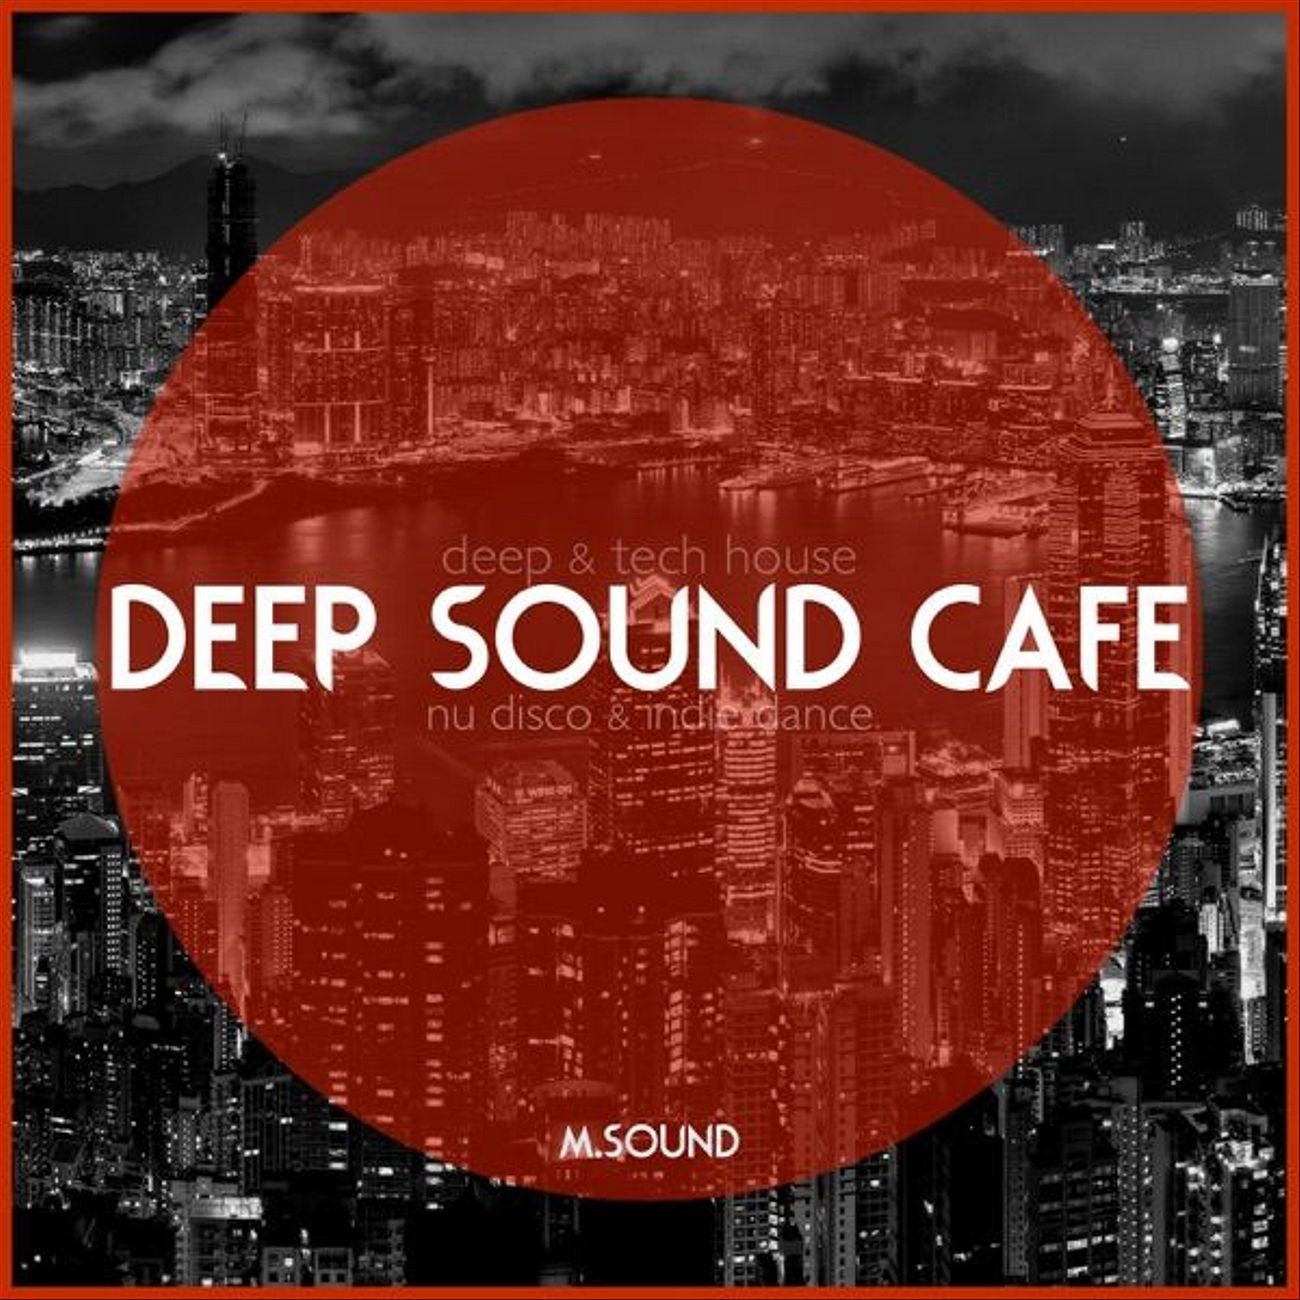 DEEP SOUND CAFE